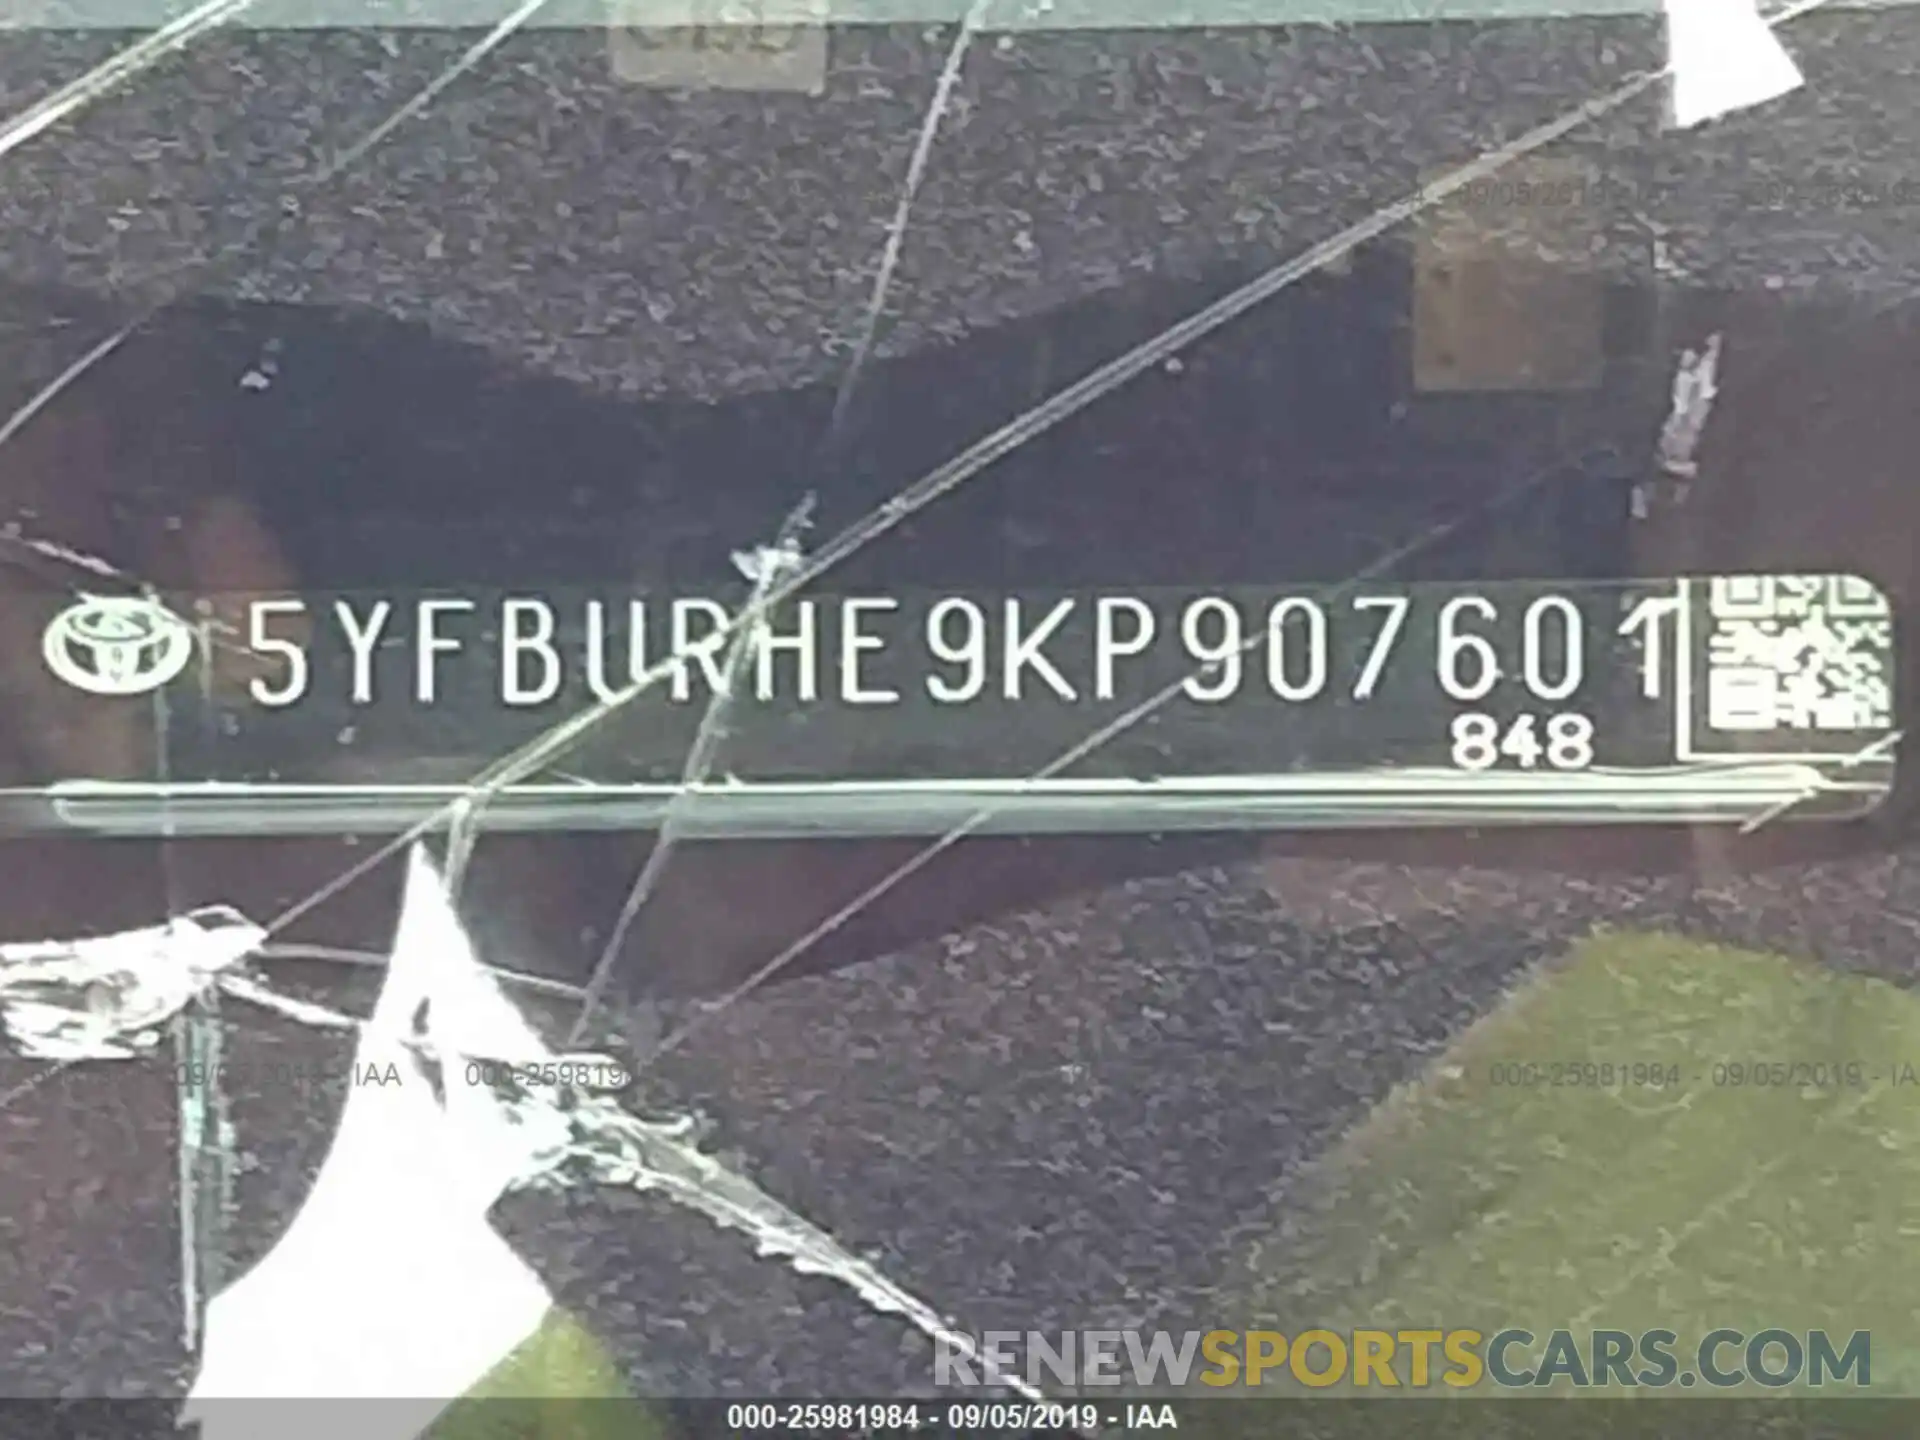 9 Photograph of a damaged car 5YFBURHE9KP907601 TOYOTA COROLLA 2019